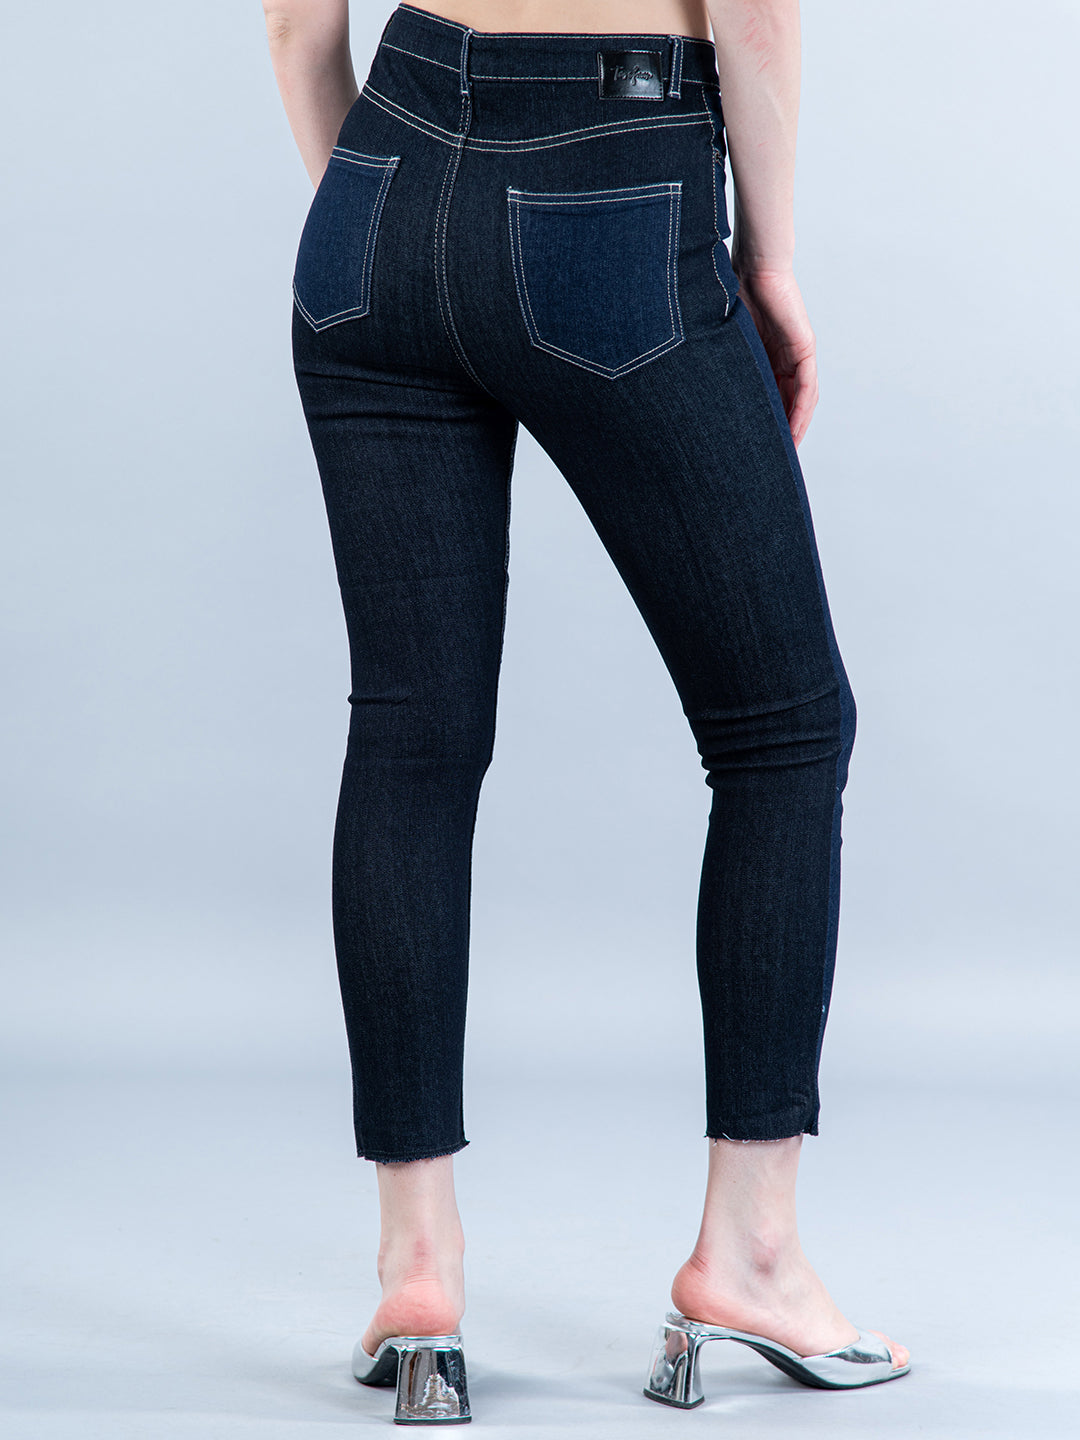 fancy jeans for girls